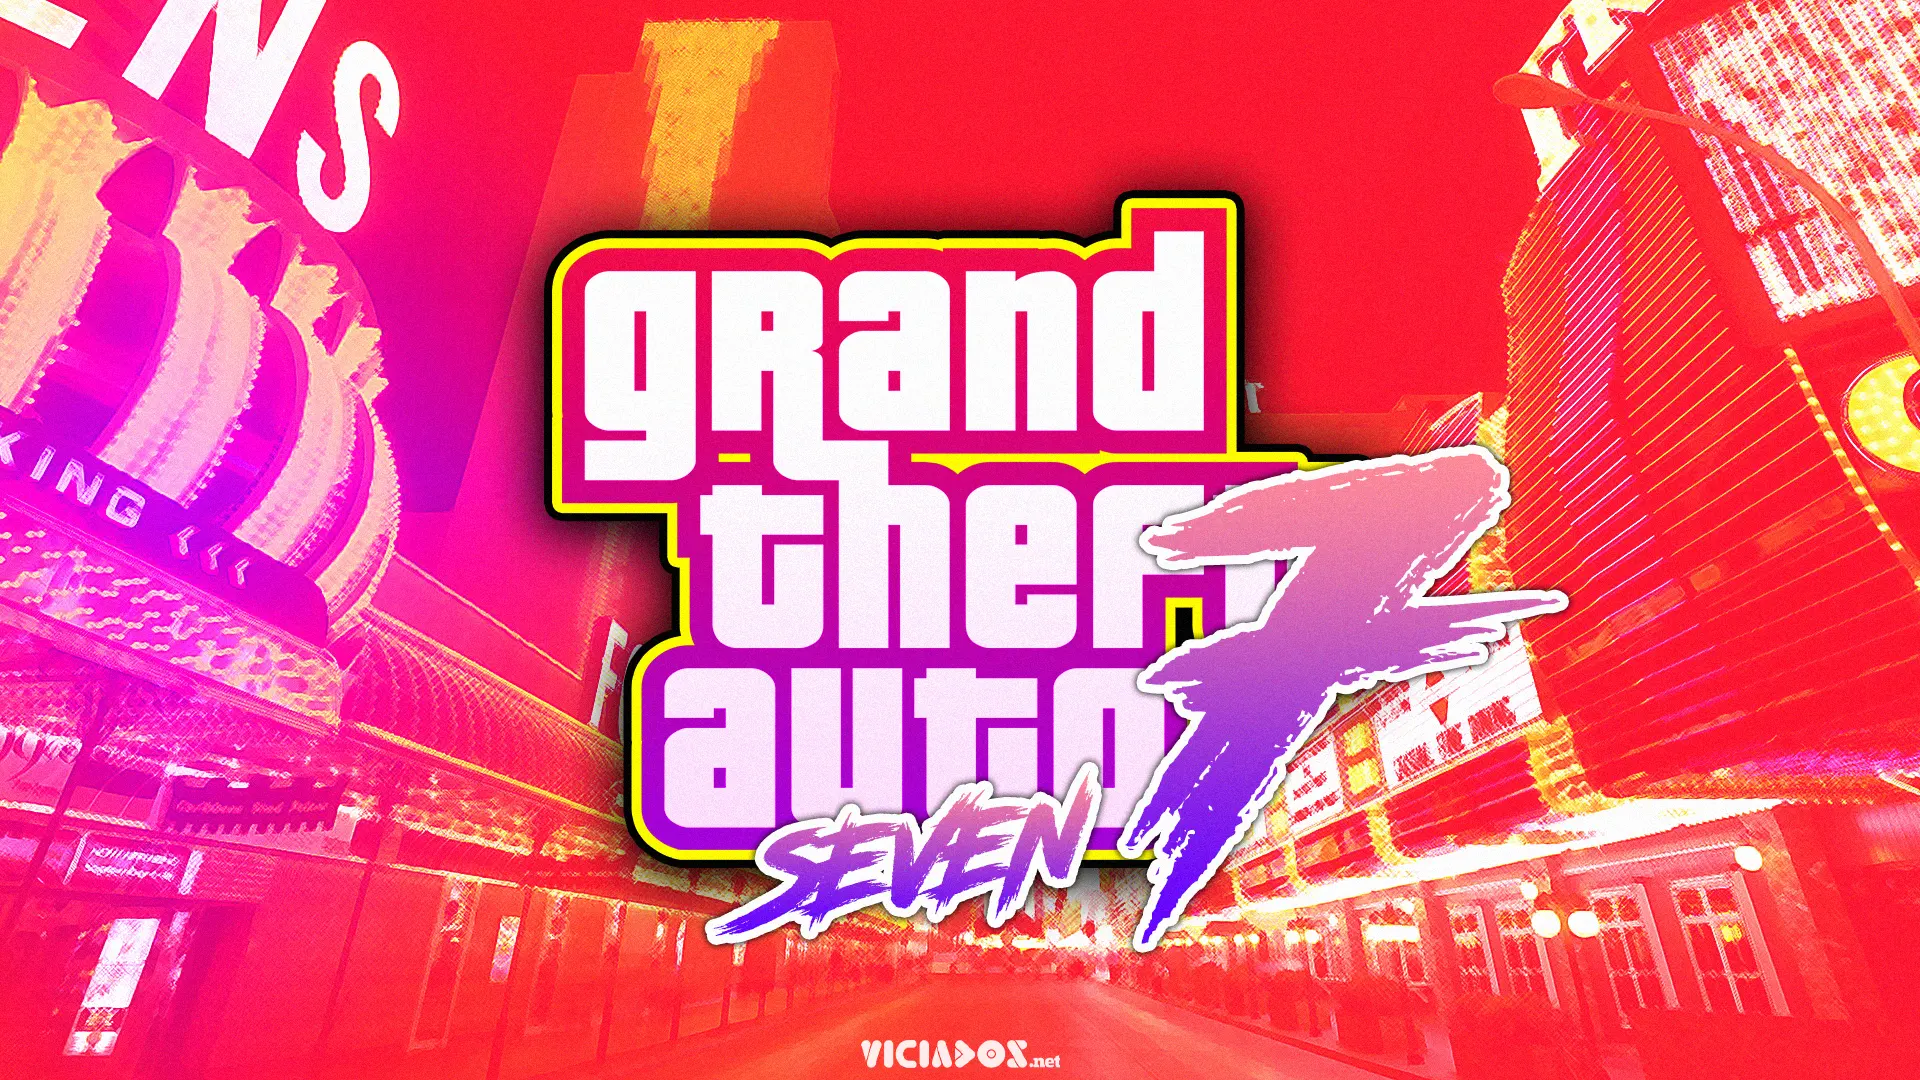 Quando Grand Theft Auto VII (GTA 7) será lançado? Entenda! 2024 Portal Viciados